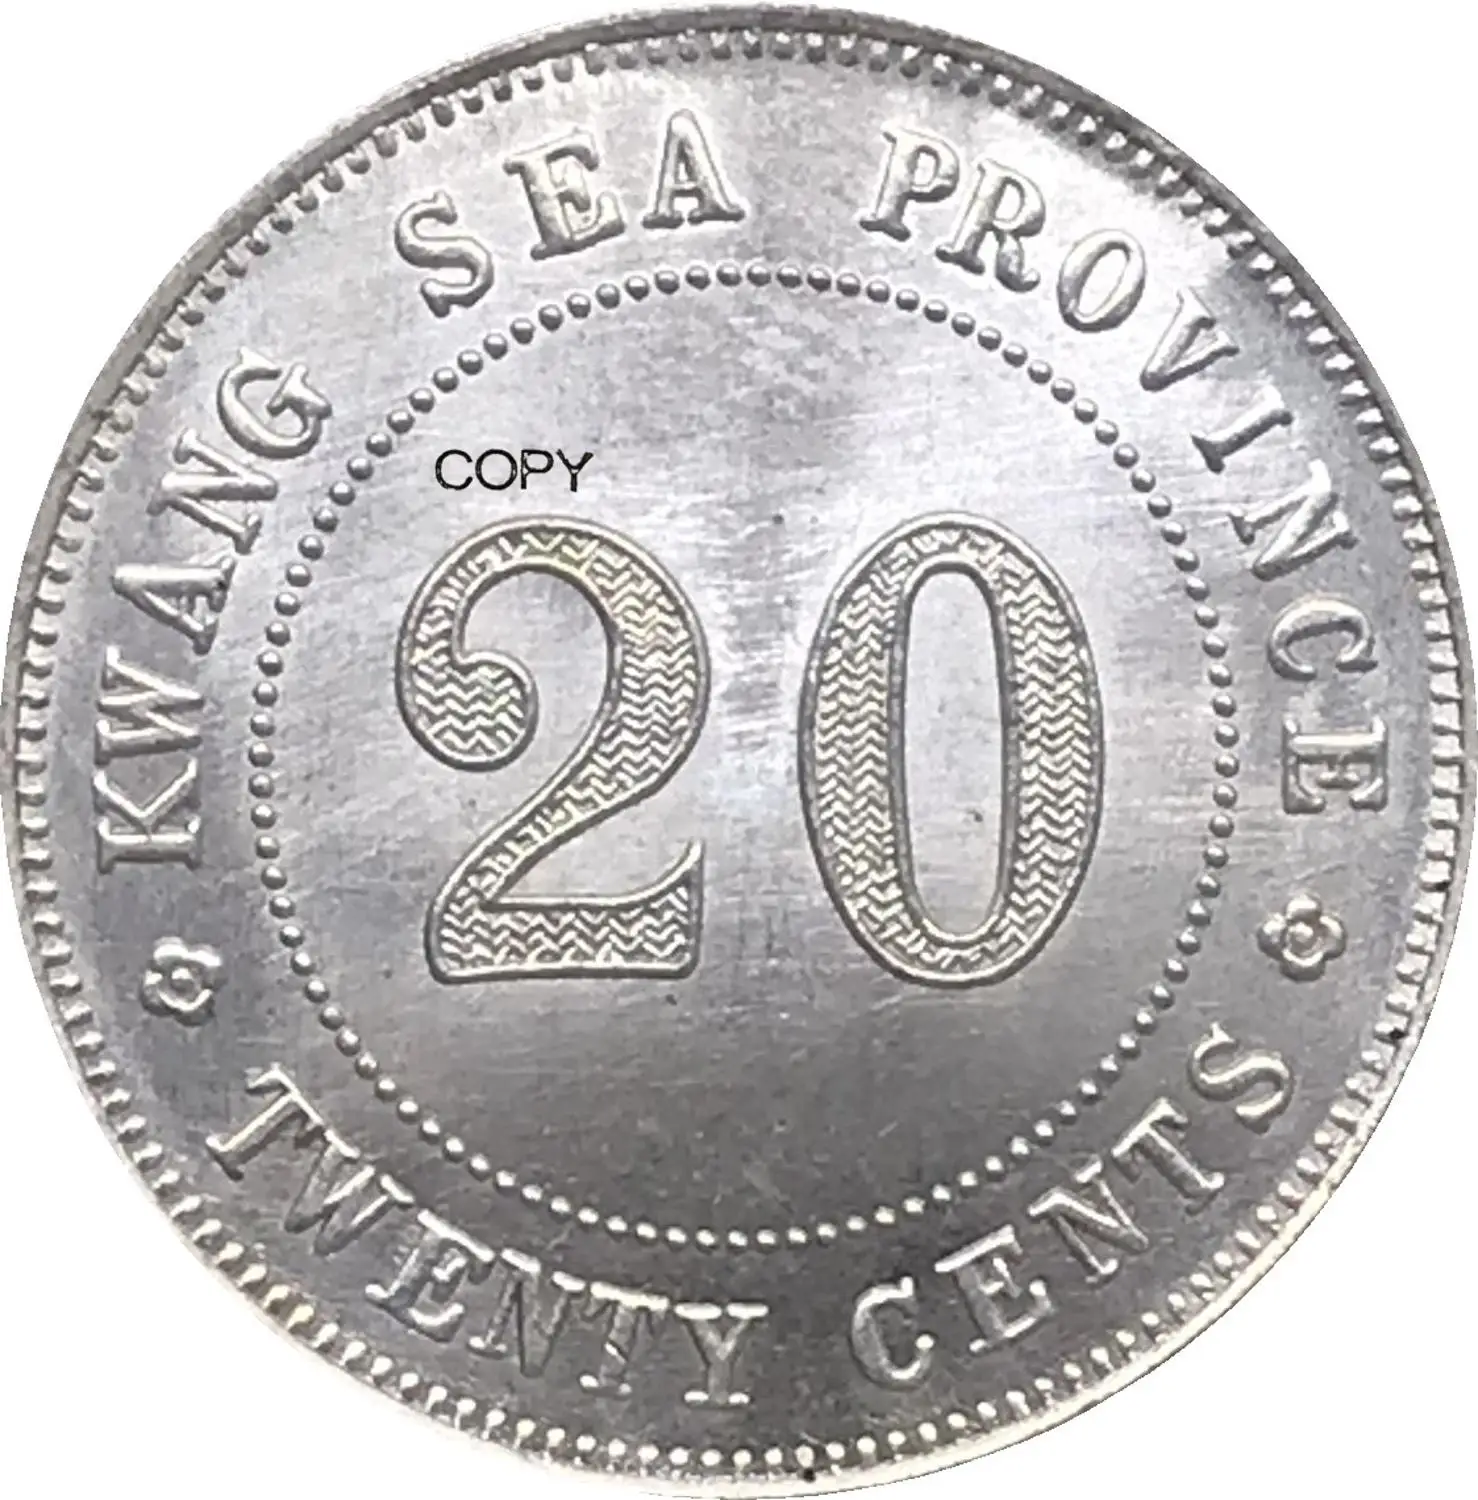 Čína Kwangsi Provincii Silver 20 Centov MORA typ 1920 Cupronickel Strieborné Pozlátené Kópiu Mince Obrázok 5